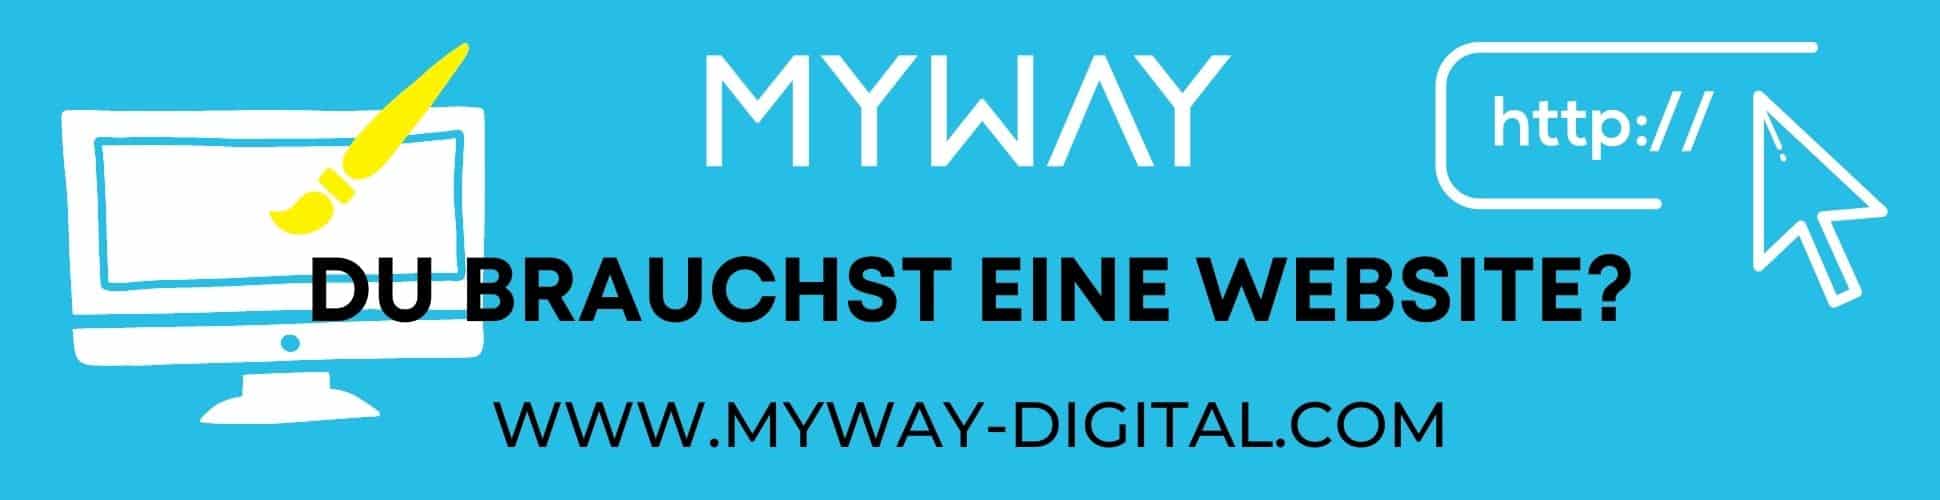 myway digital banner du brauchst eine website webdesign